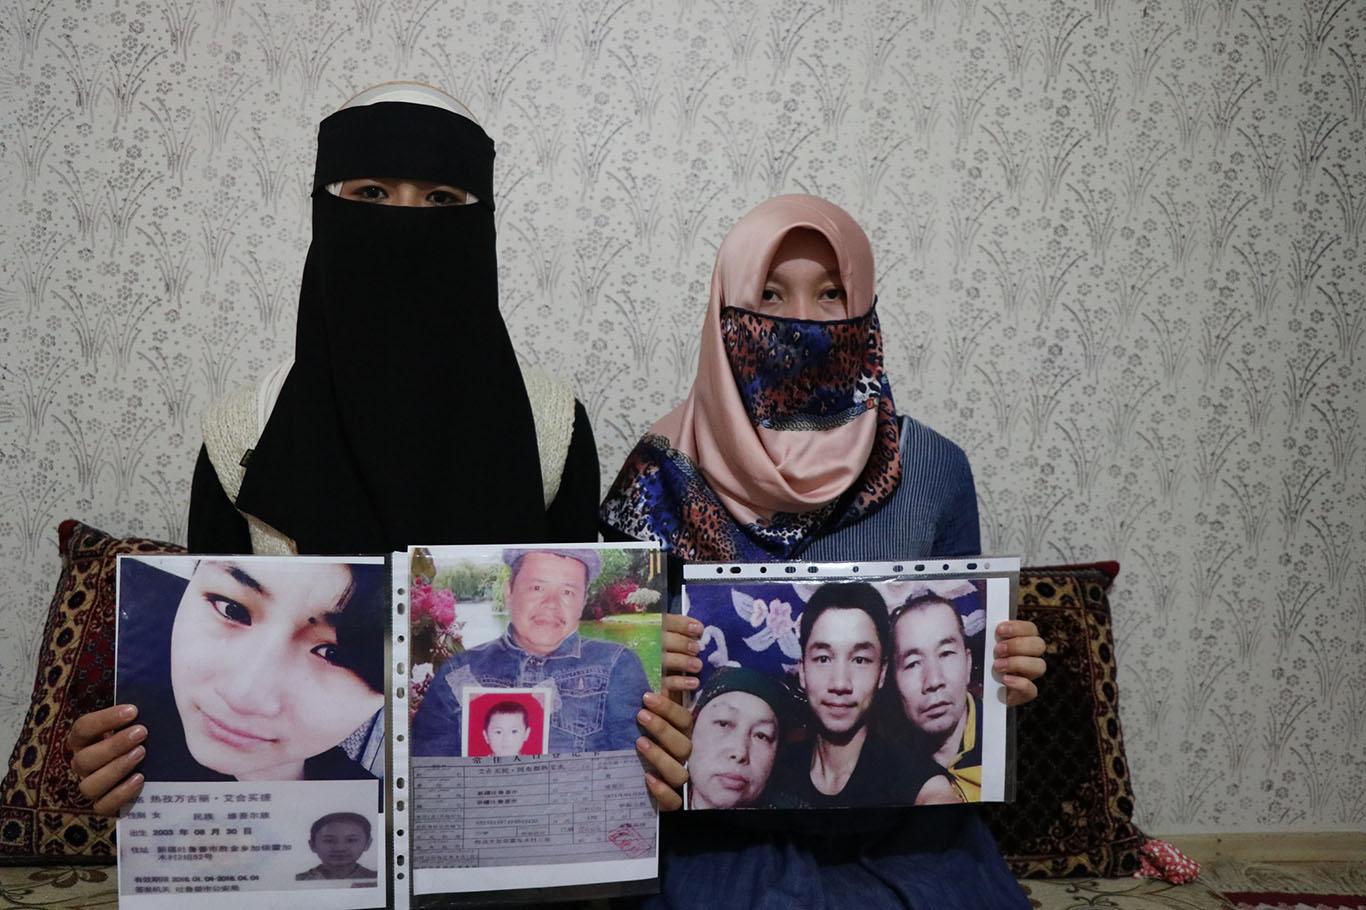 Ailelerinden haber alamayan Doğu Türkistanlı Müslümanlar: Sessiz kalmayın!